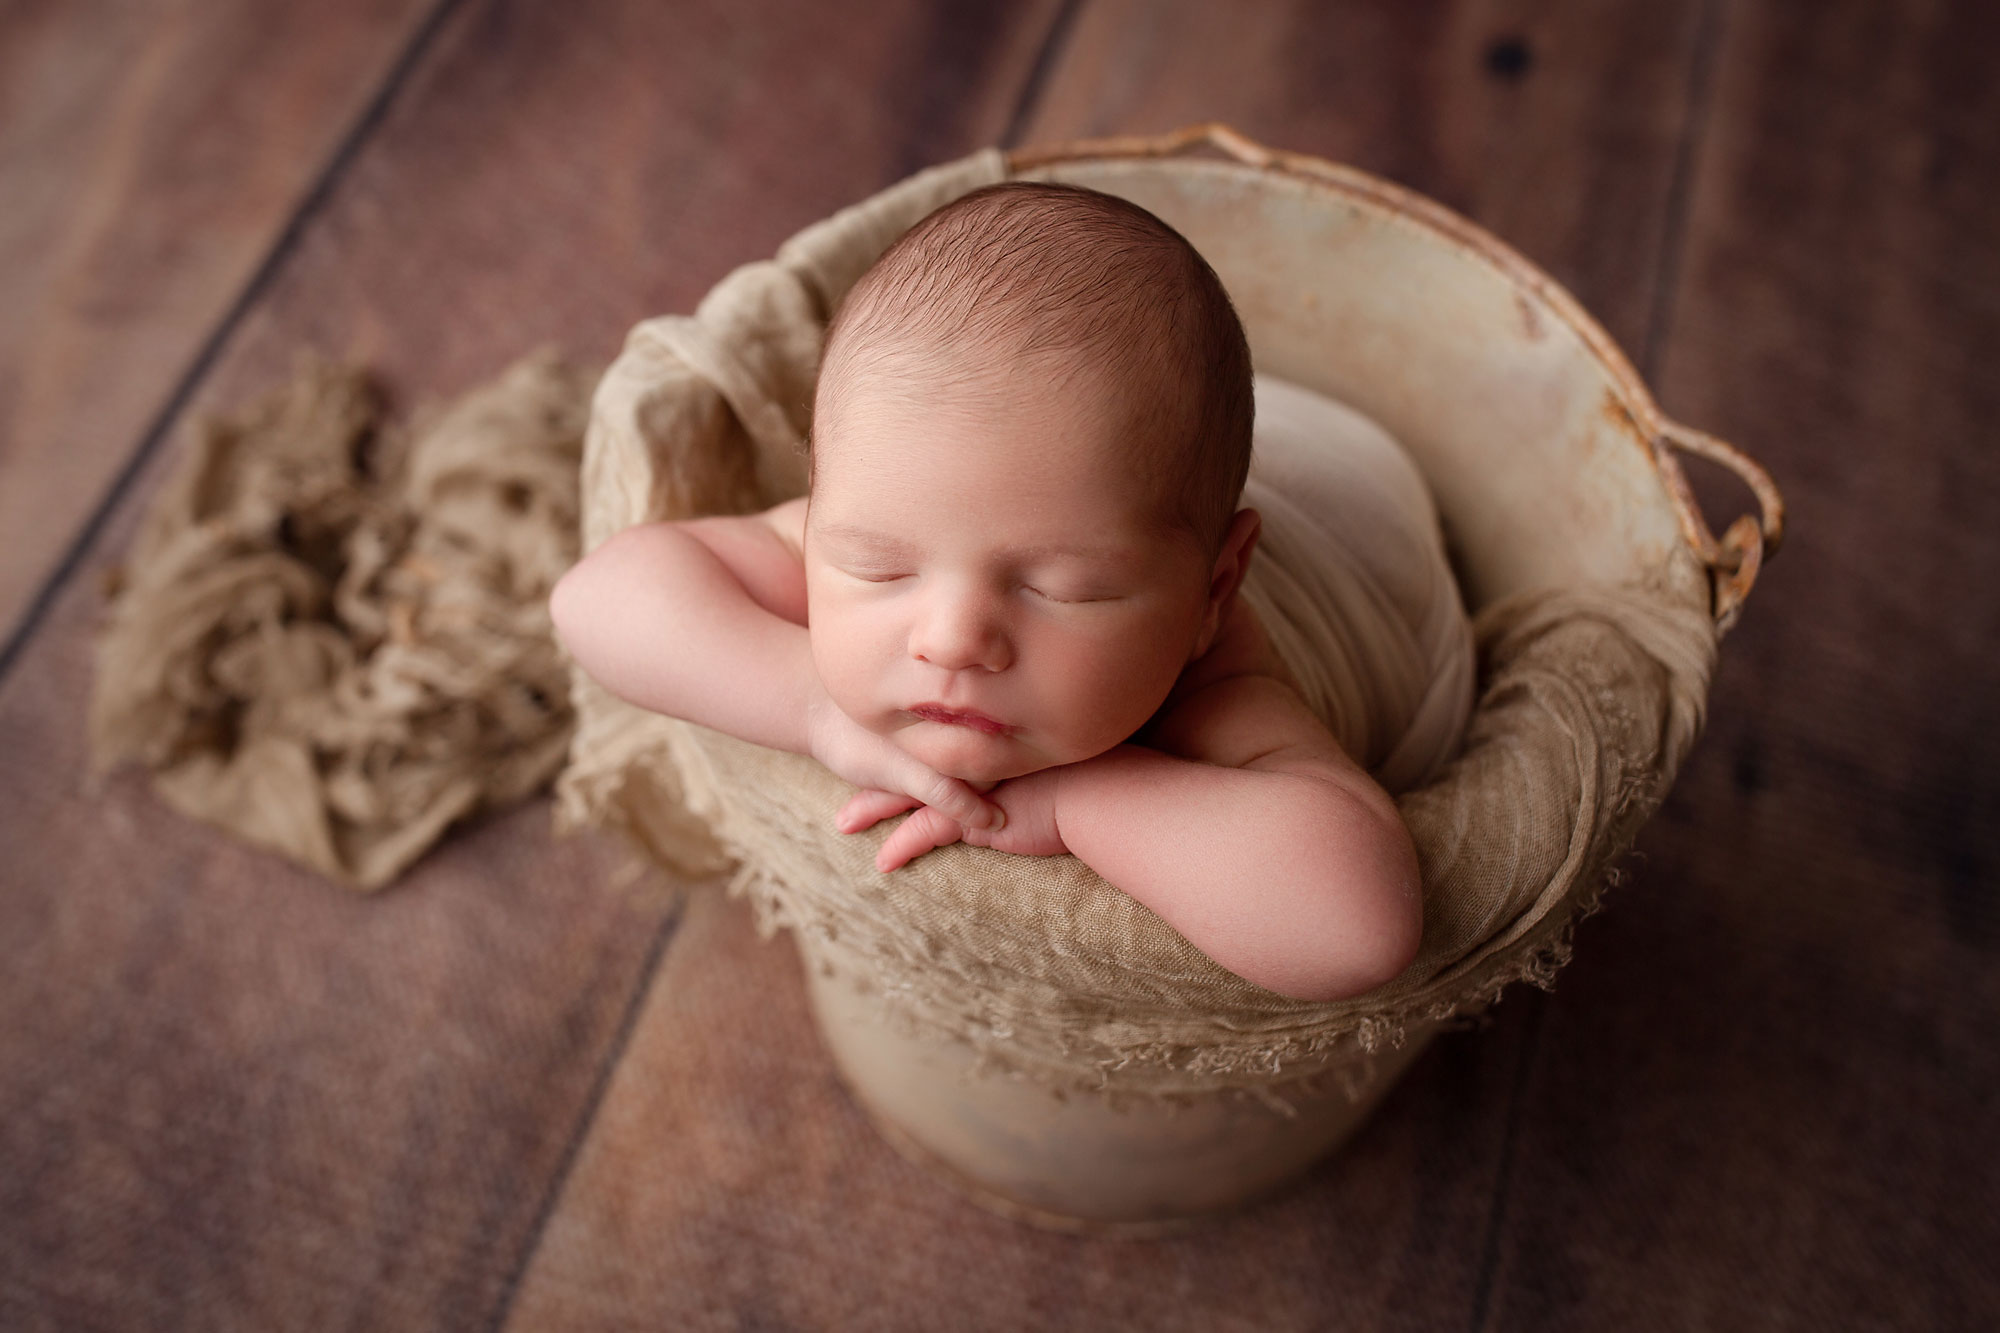 nj newborn pictures, baby boy asleep in bucket